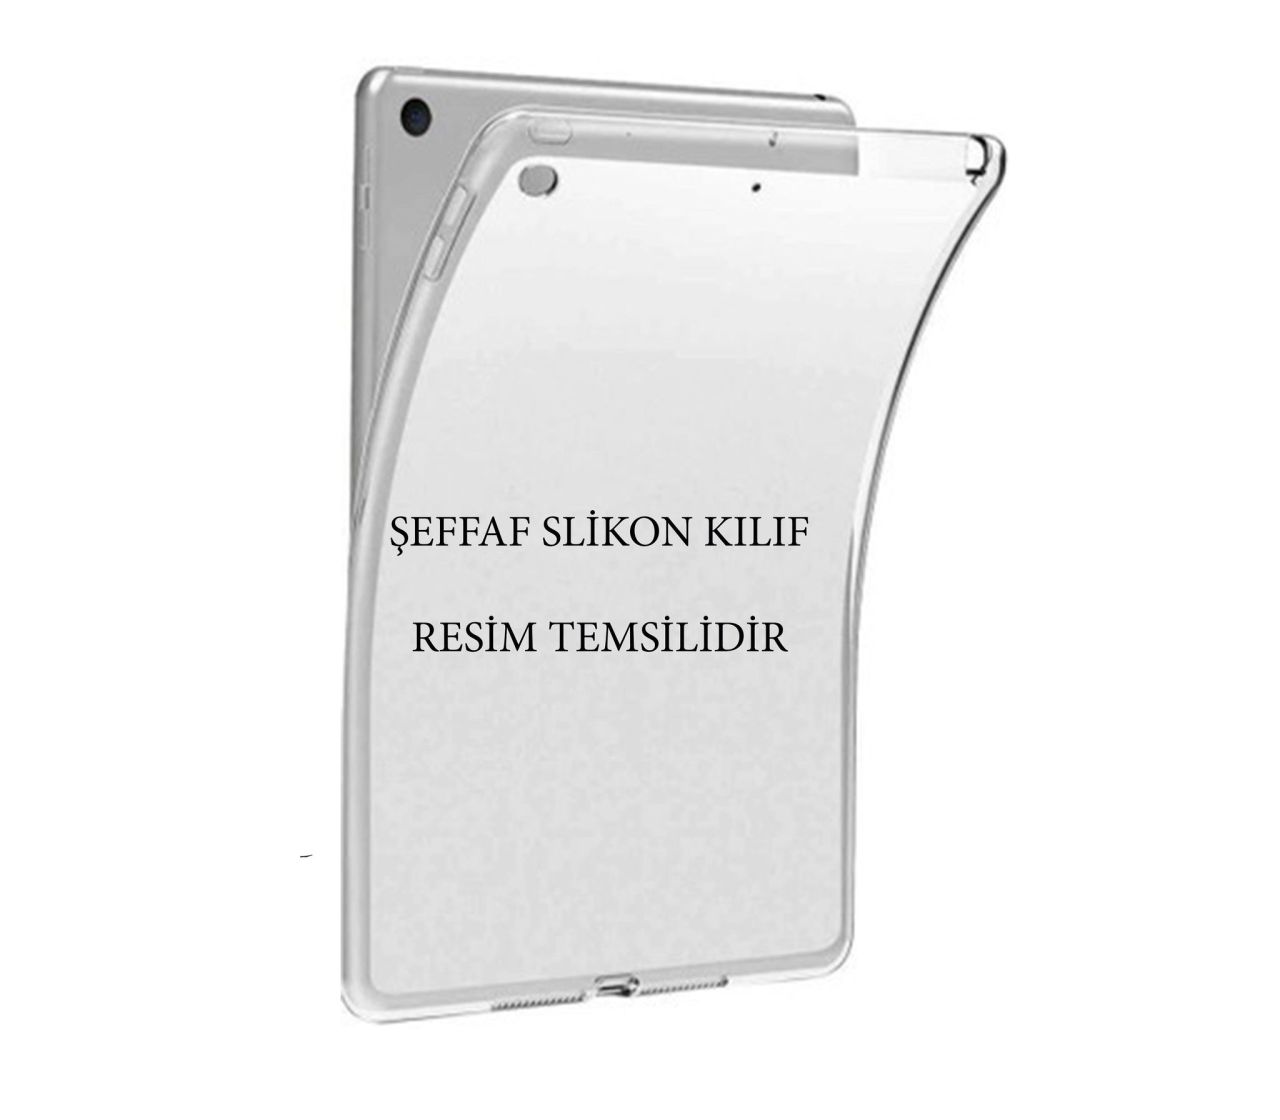 Samsung Galaxy Tab S6 Lite 10.4'' SM-P610 SM-P617 Şeffaf Slikon Kılıf 5 Adet